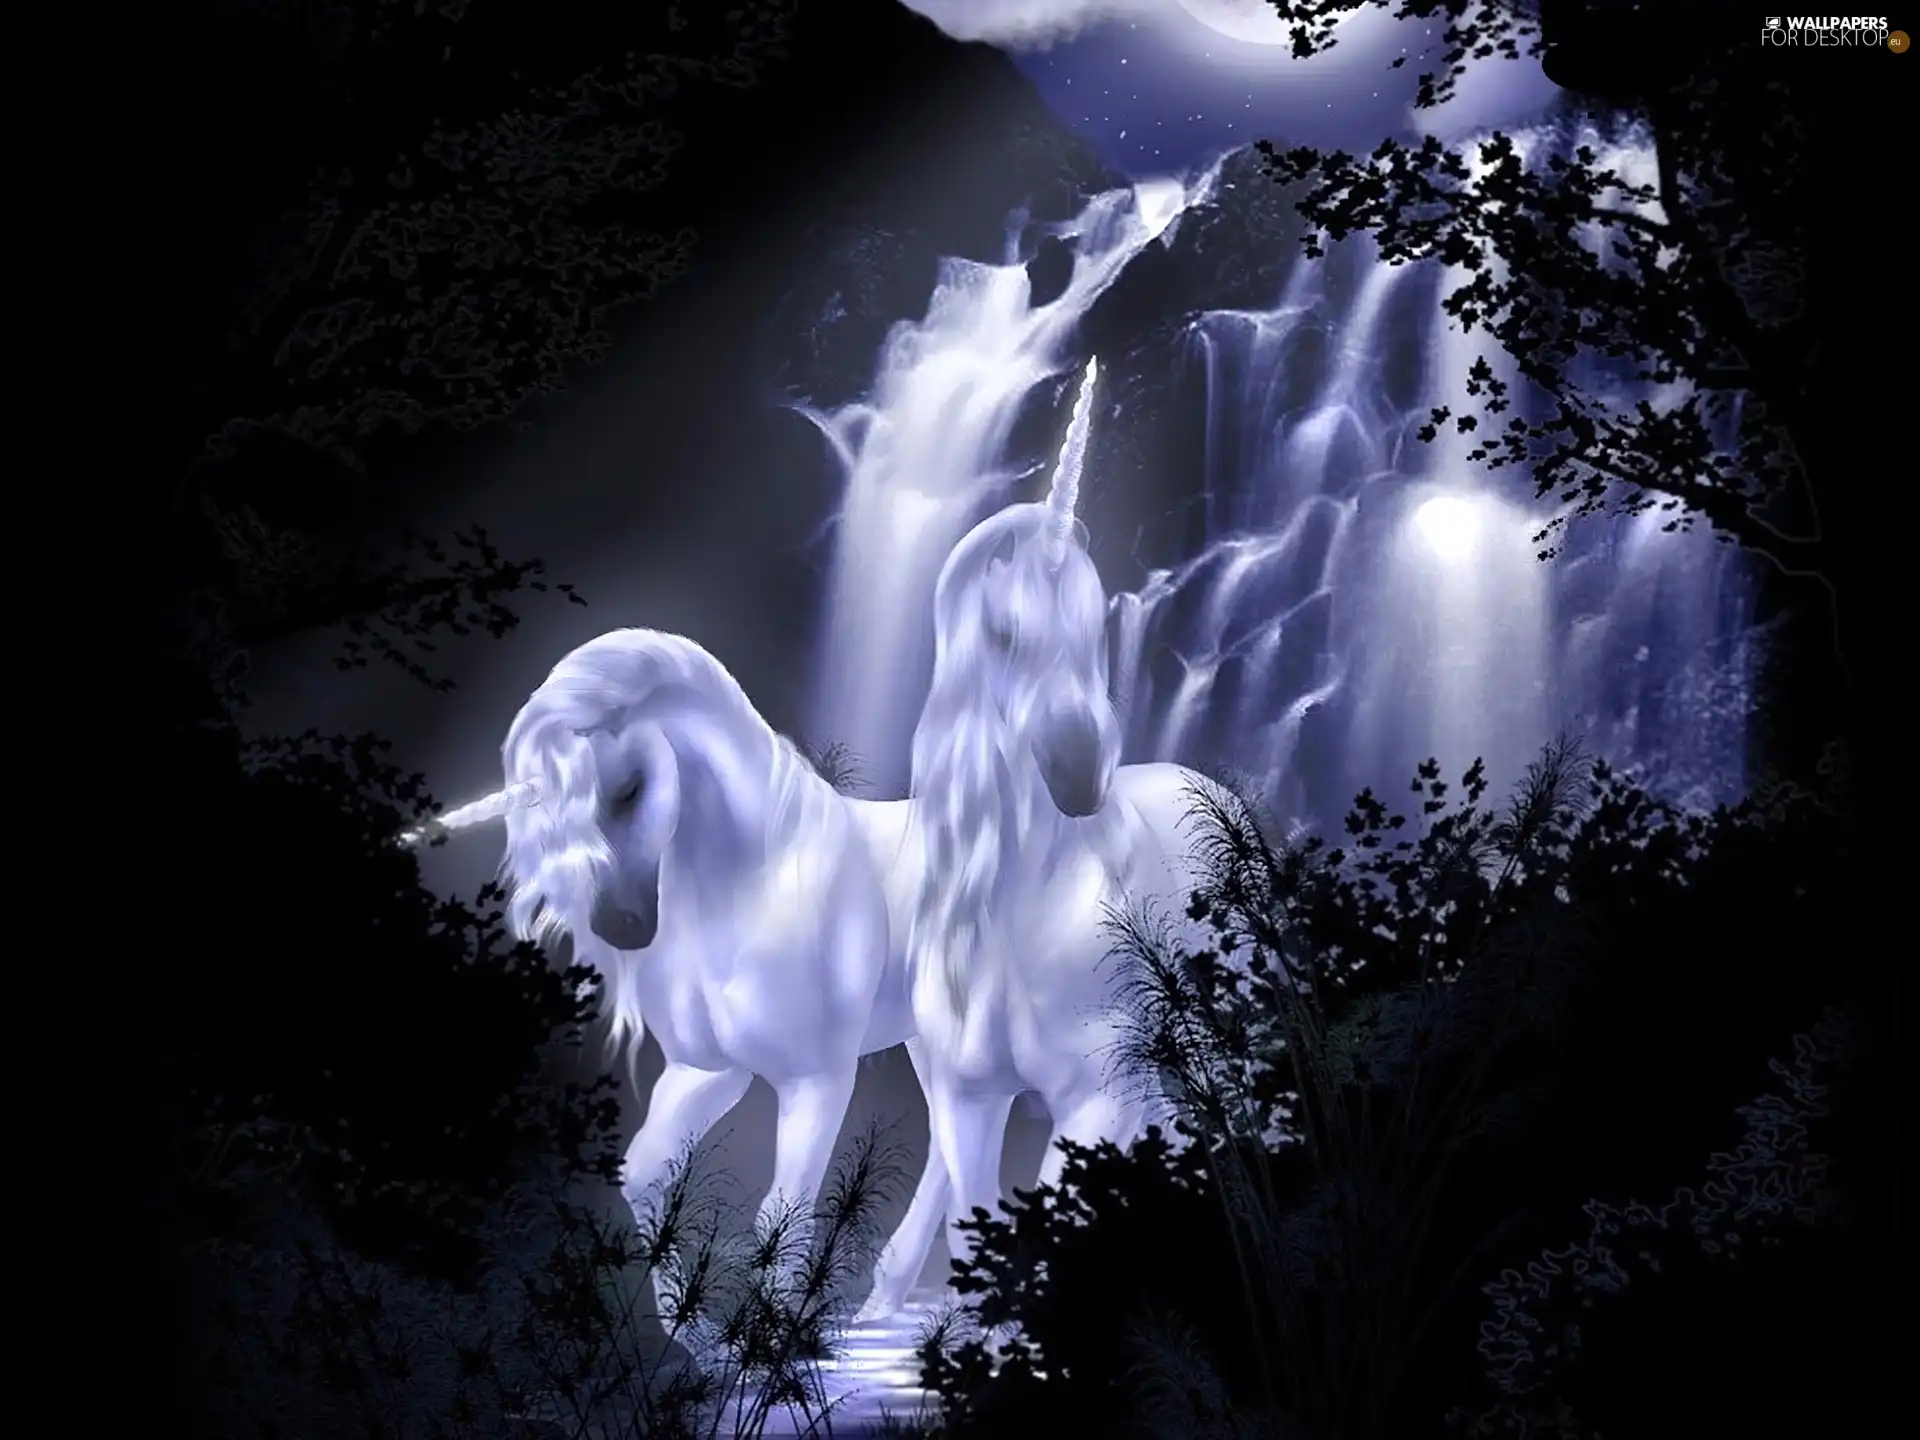 Night, unicorns, waterfall